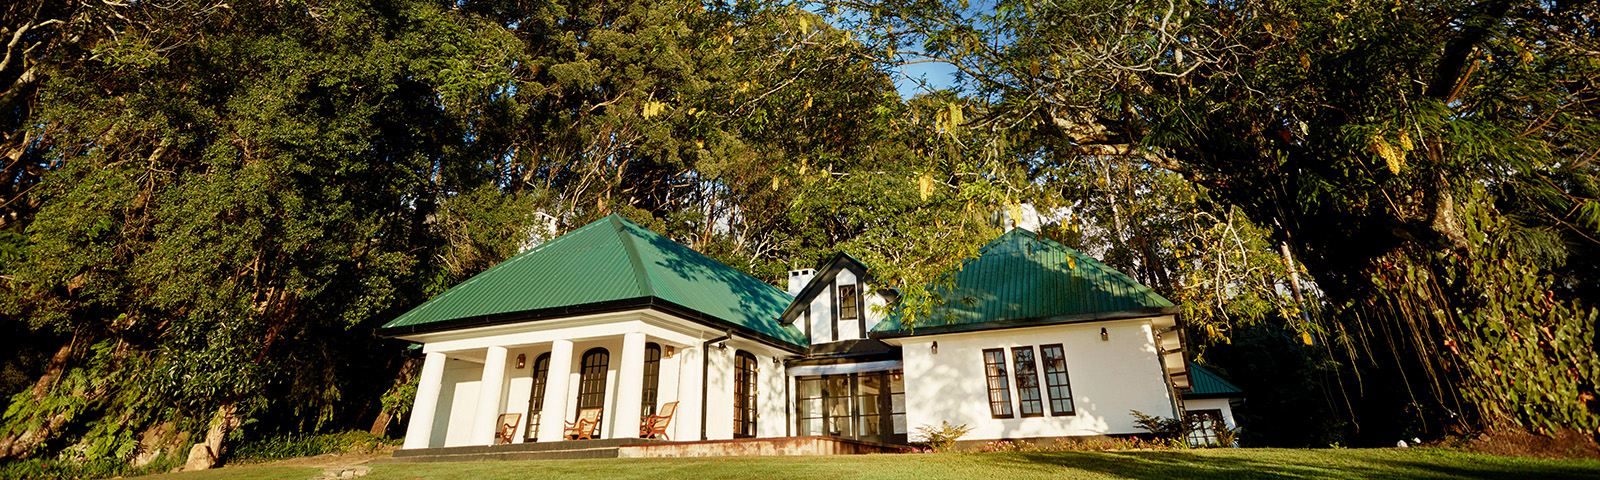 Thotalagala Plantation House